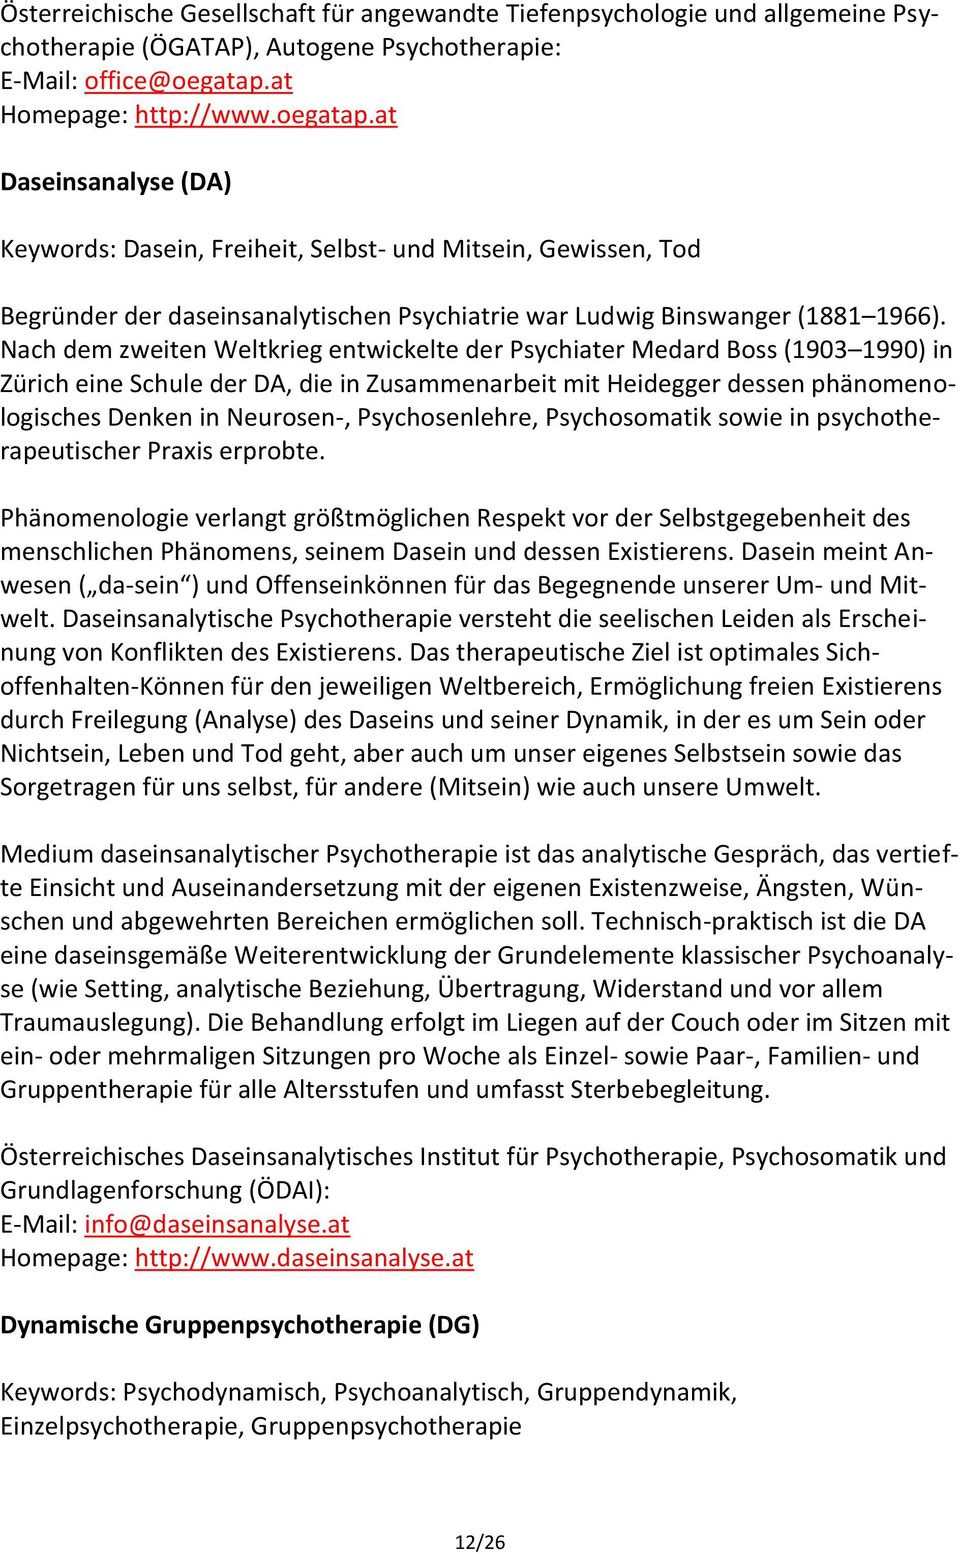 Nach dem zweiten Weltkrieg entwickelte der Psychiater Medard Boss (1903 1990) in Zürich eine Schule der DA, die in Zusammenarbeit mit Heidegger dessen phänomenologisches Denken in Neurosen-,